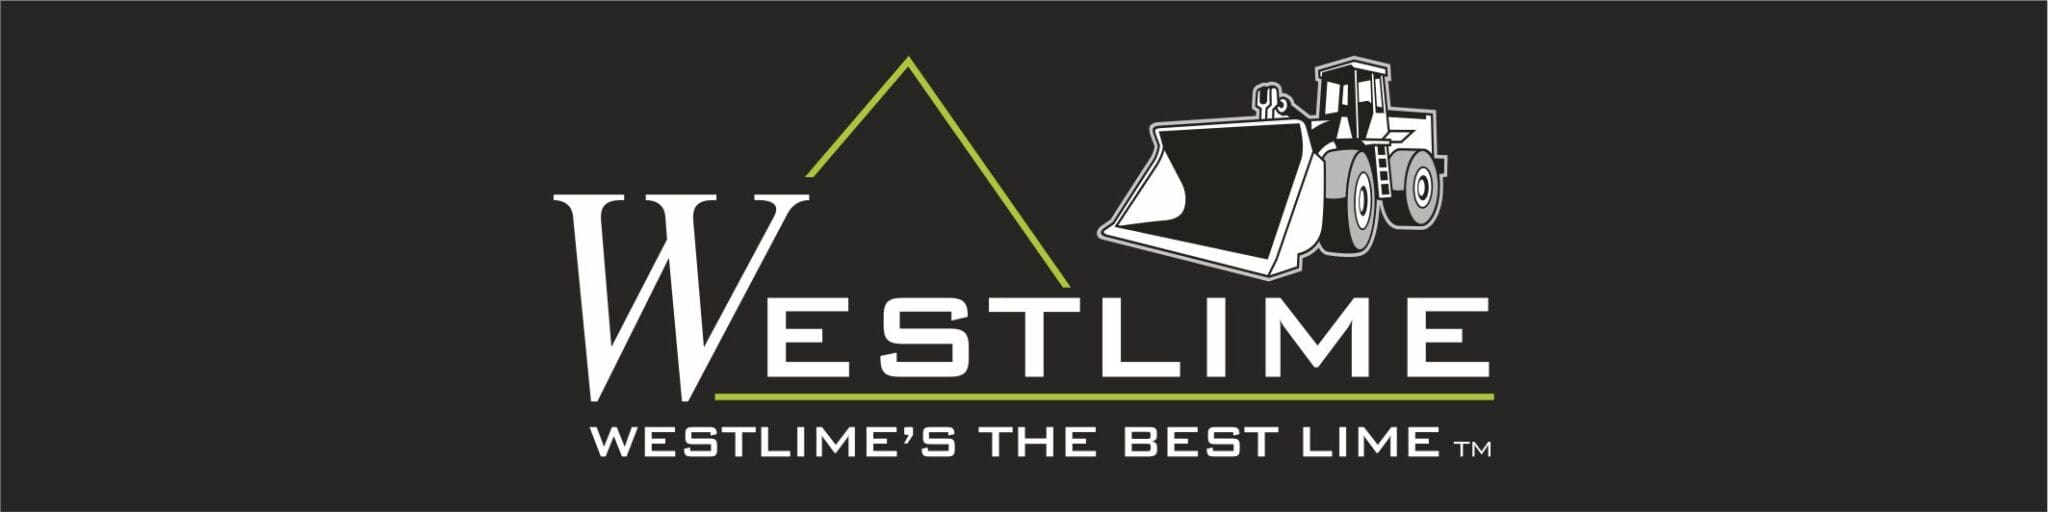 Westlime the Best Lime sponsor logo